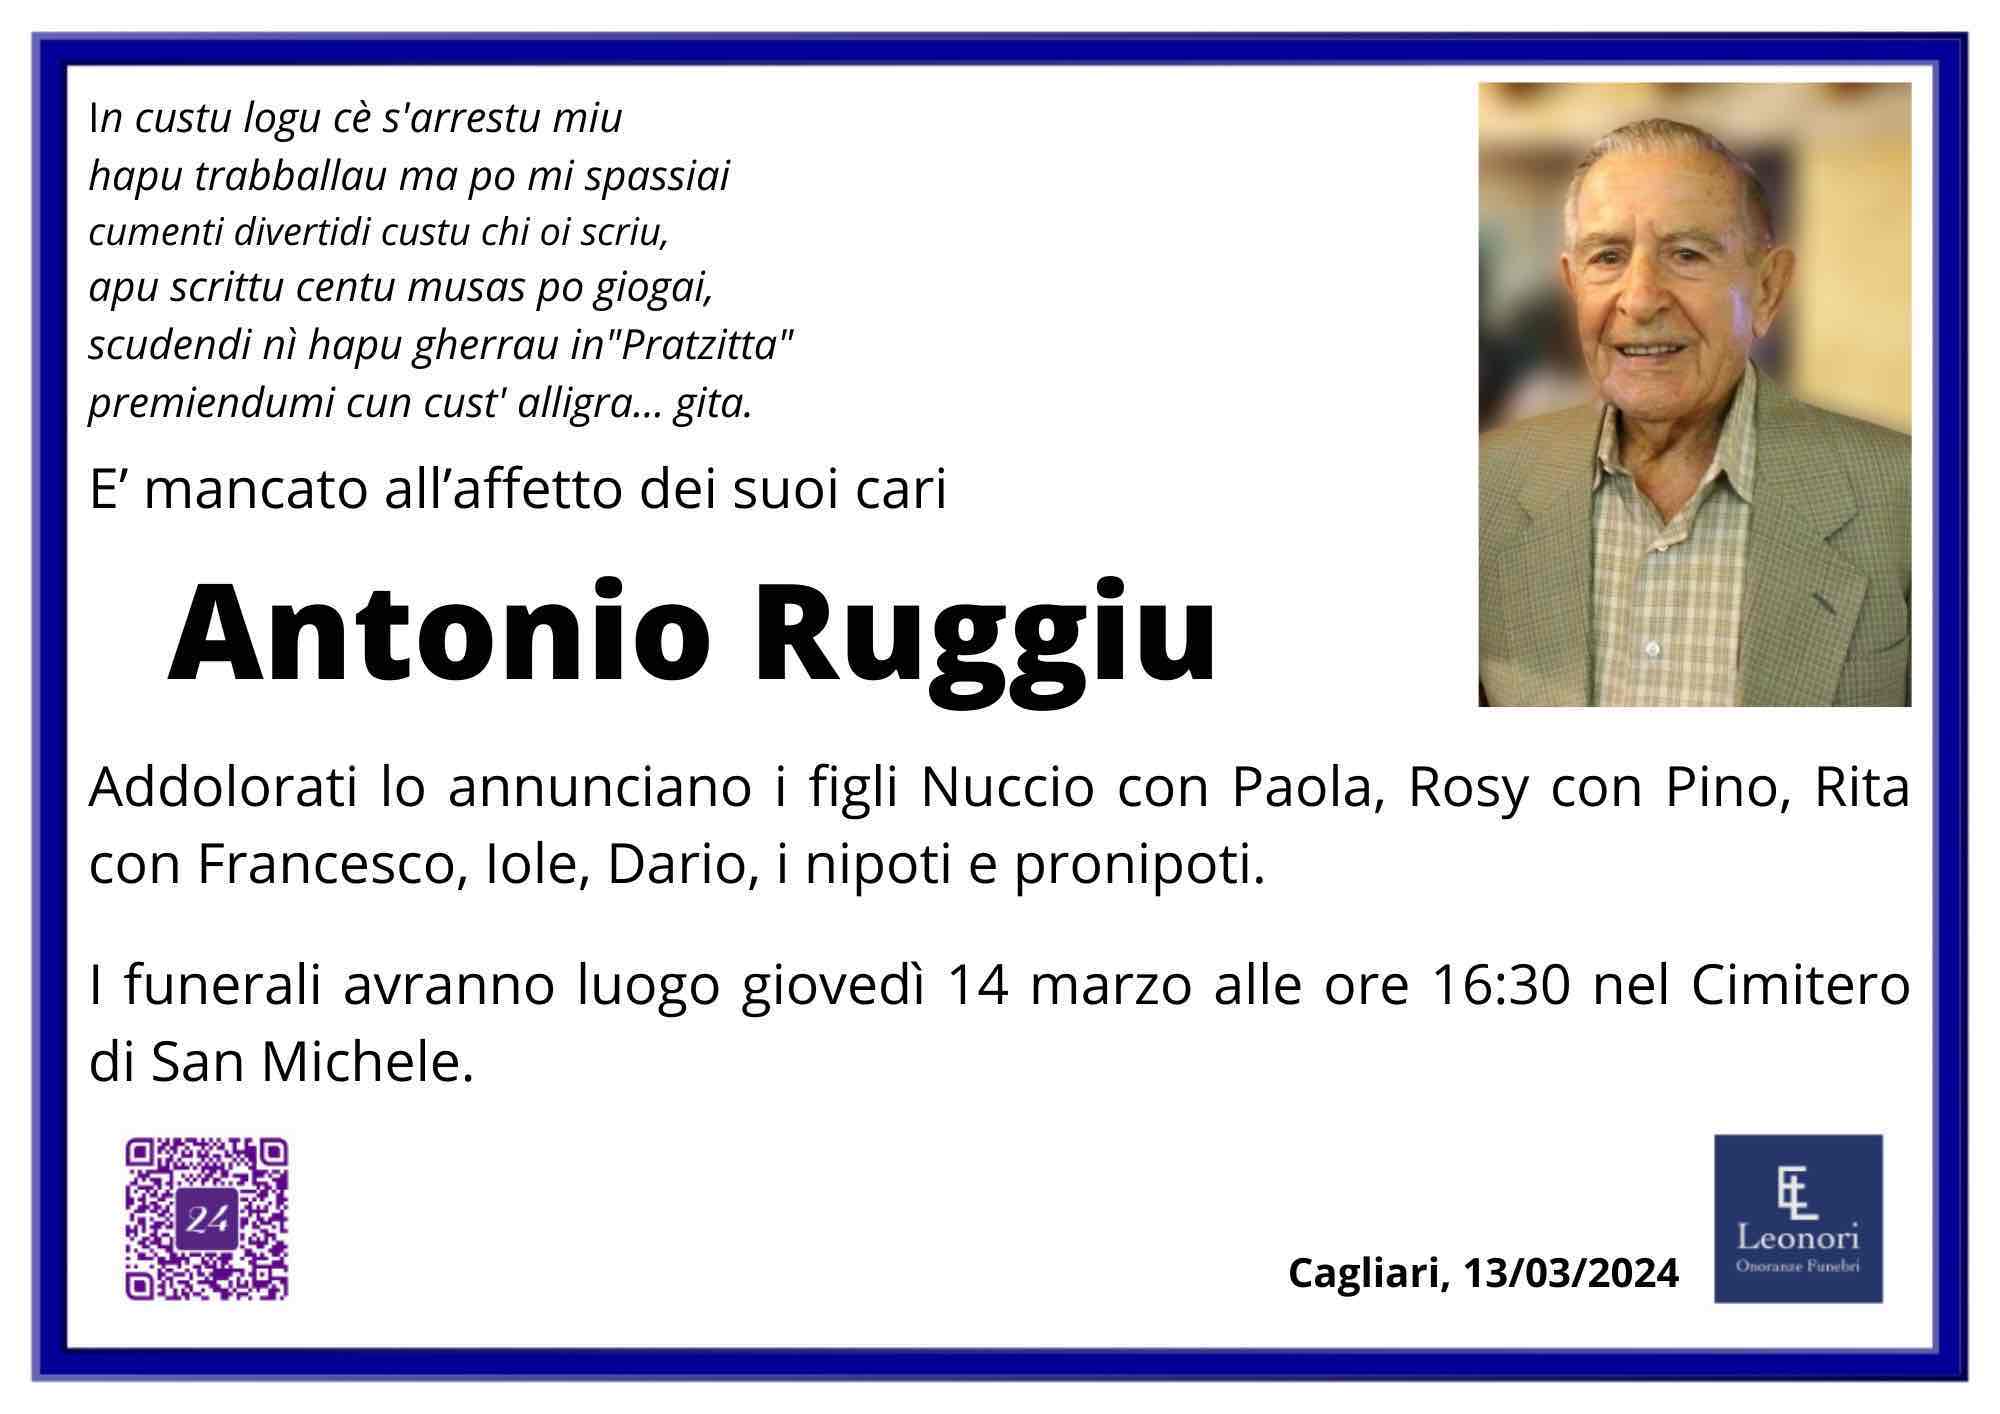 Antonio Ruggiu